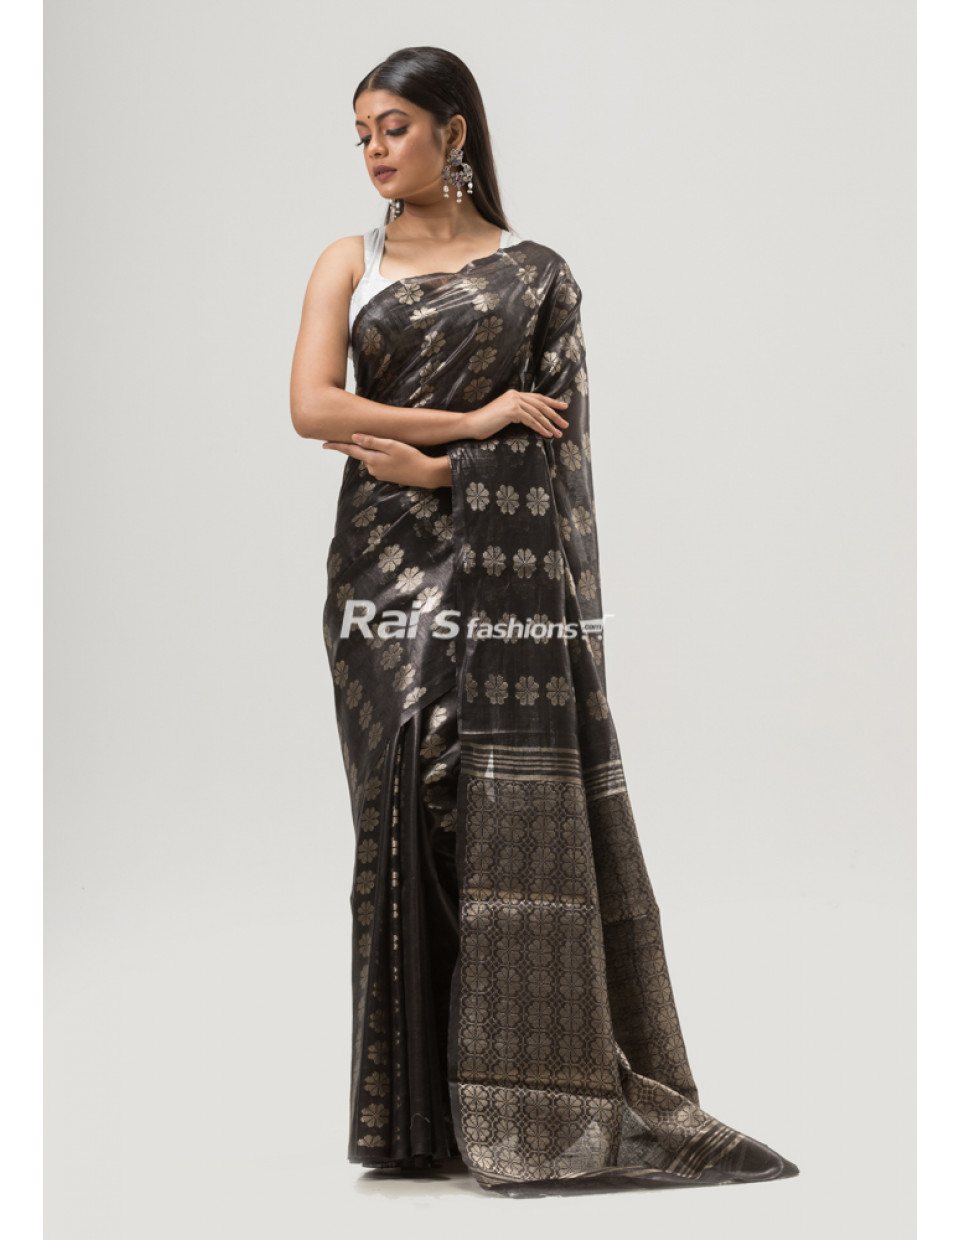 All Over Golden Butta Weaving Black Silk Linen Saree (KR1644)